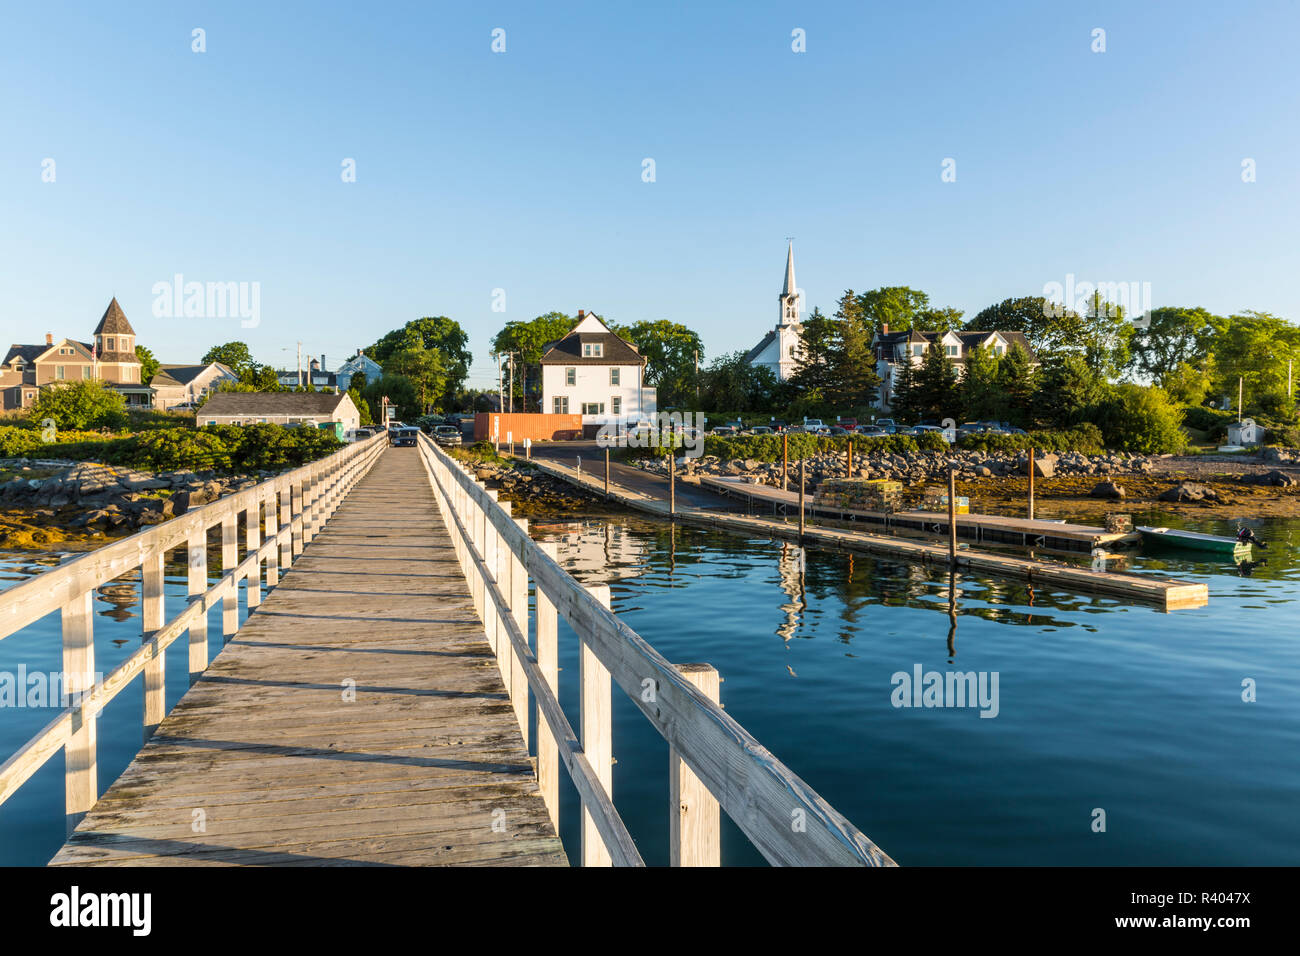 The town docks in Jonesport, Maine. Stock Photo